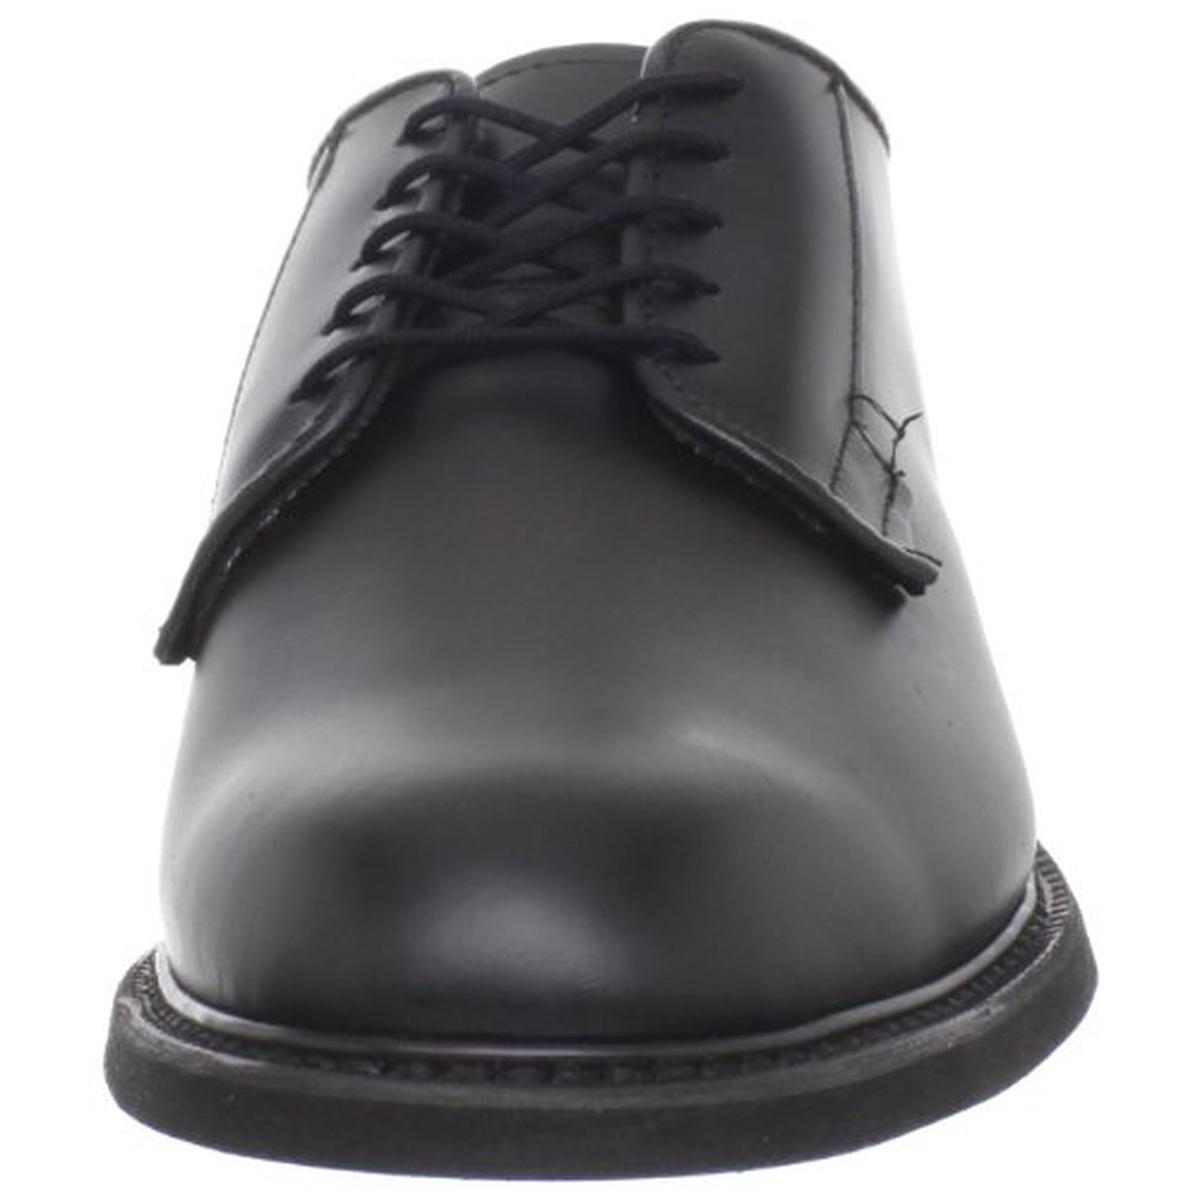 Bates Mens Uniform Black Leather Work Shoes Shoes 11.5 Narrow (C) BHFO ...